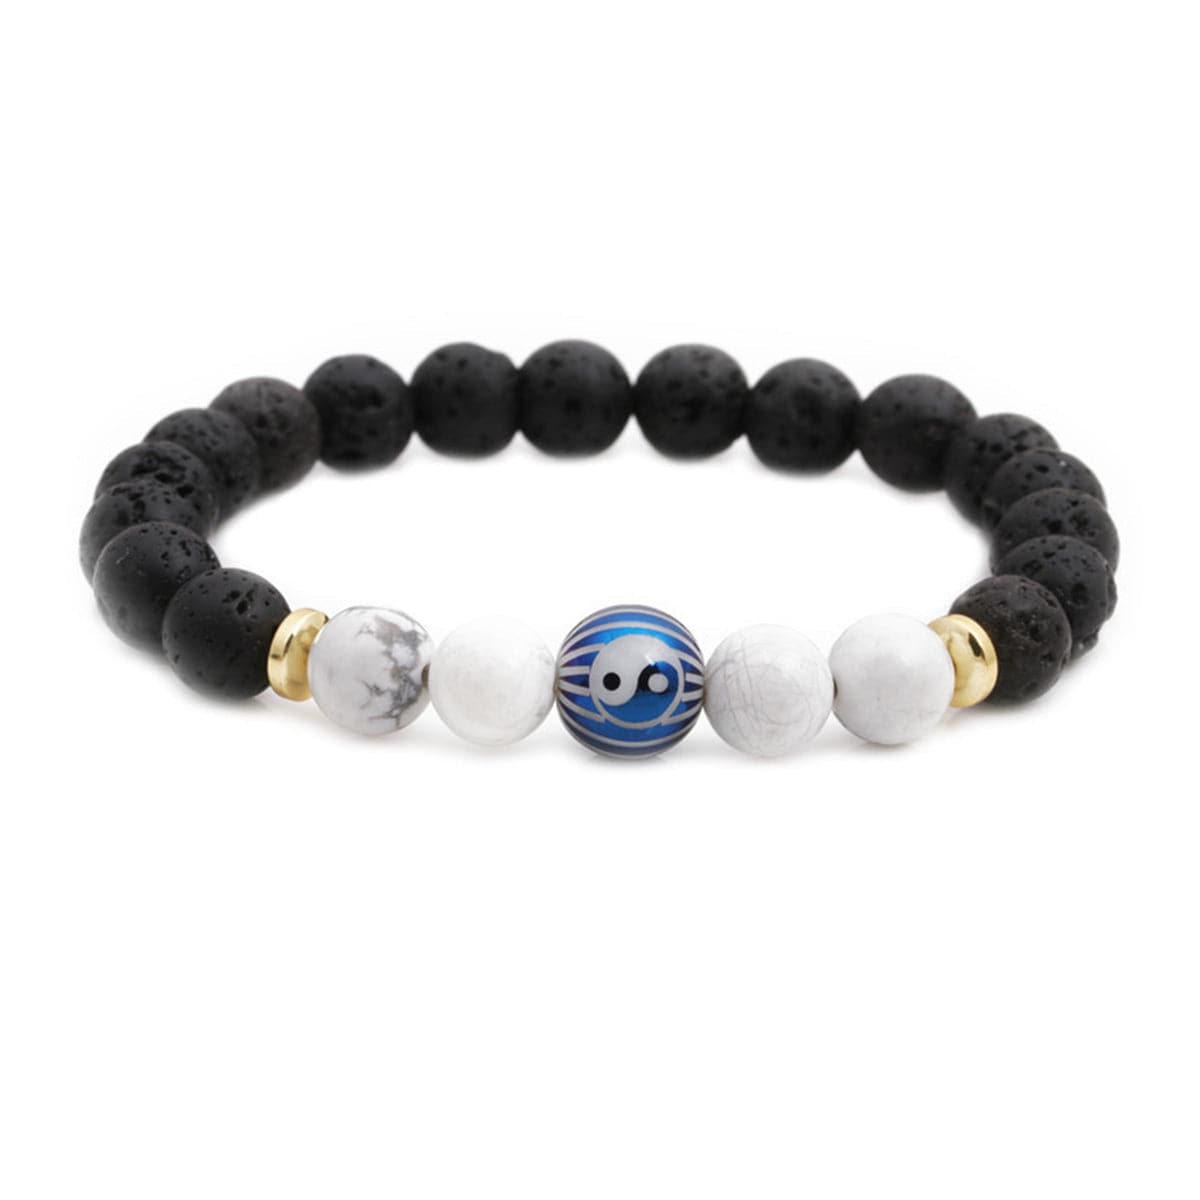 Turquoise & Black Yin & Yang Stretch Bracelet Set